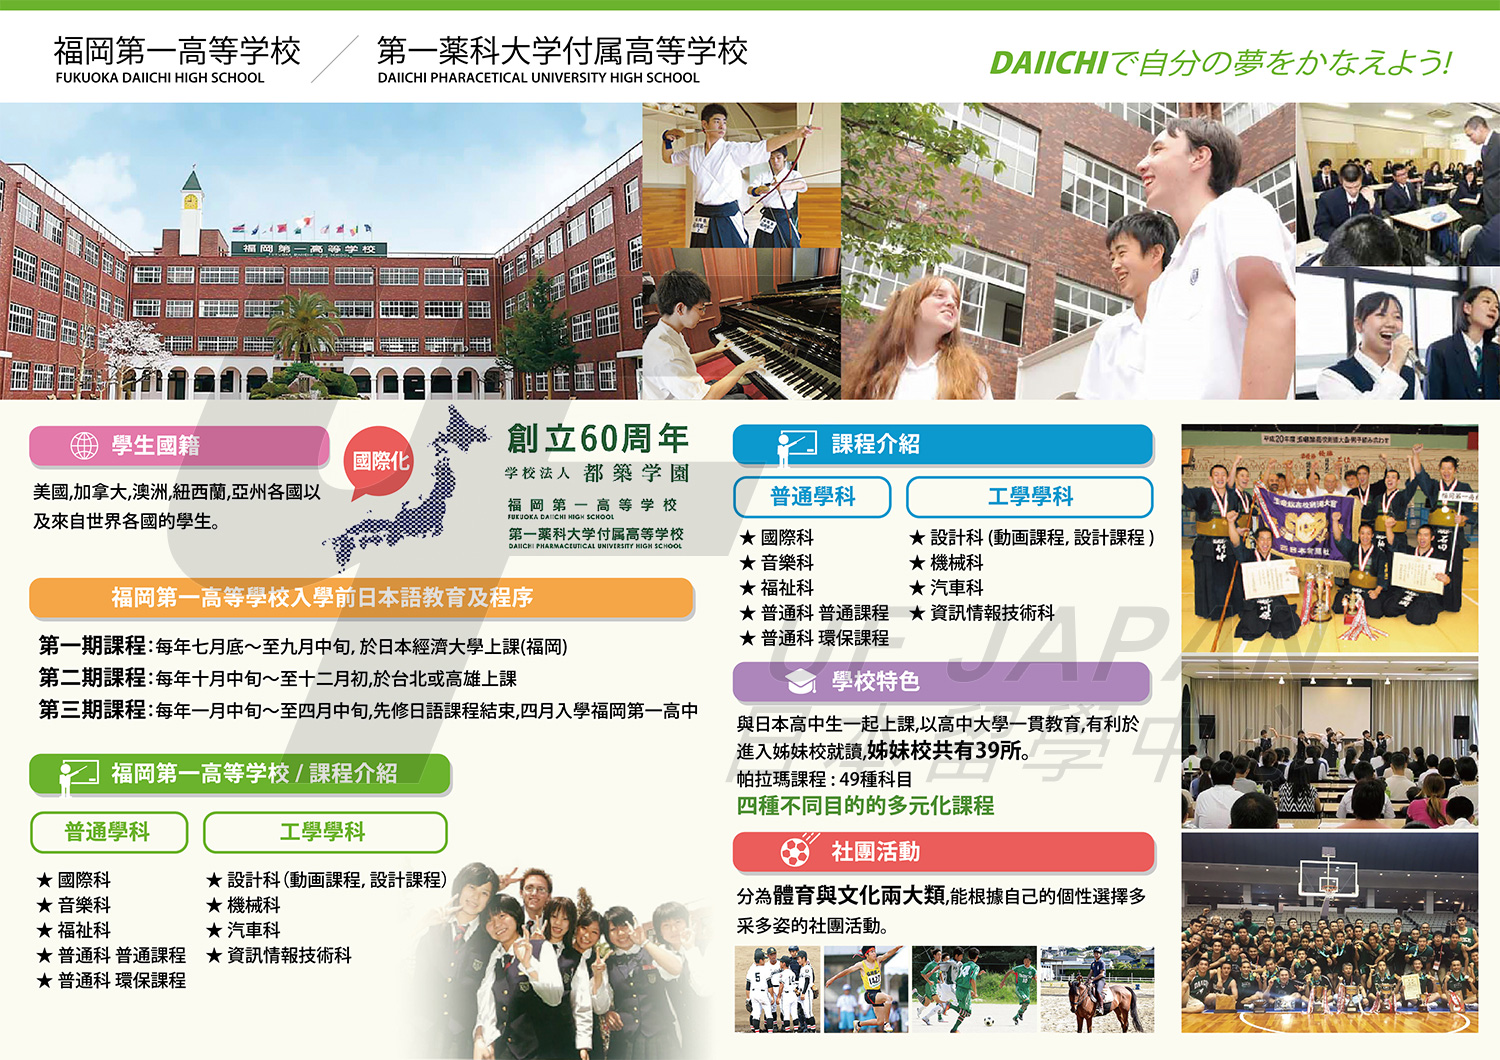 2016日本留學展參展單位-第一藥科大學附屬高等學校